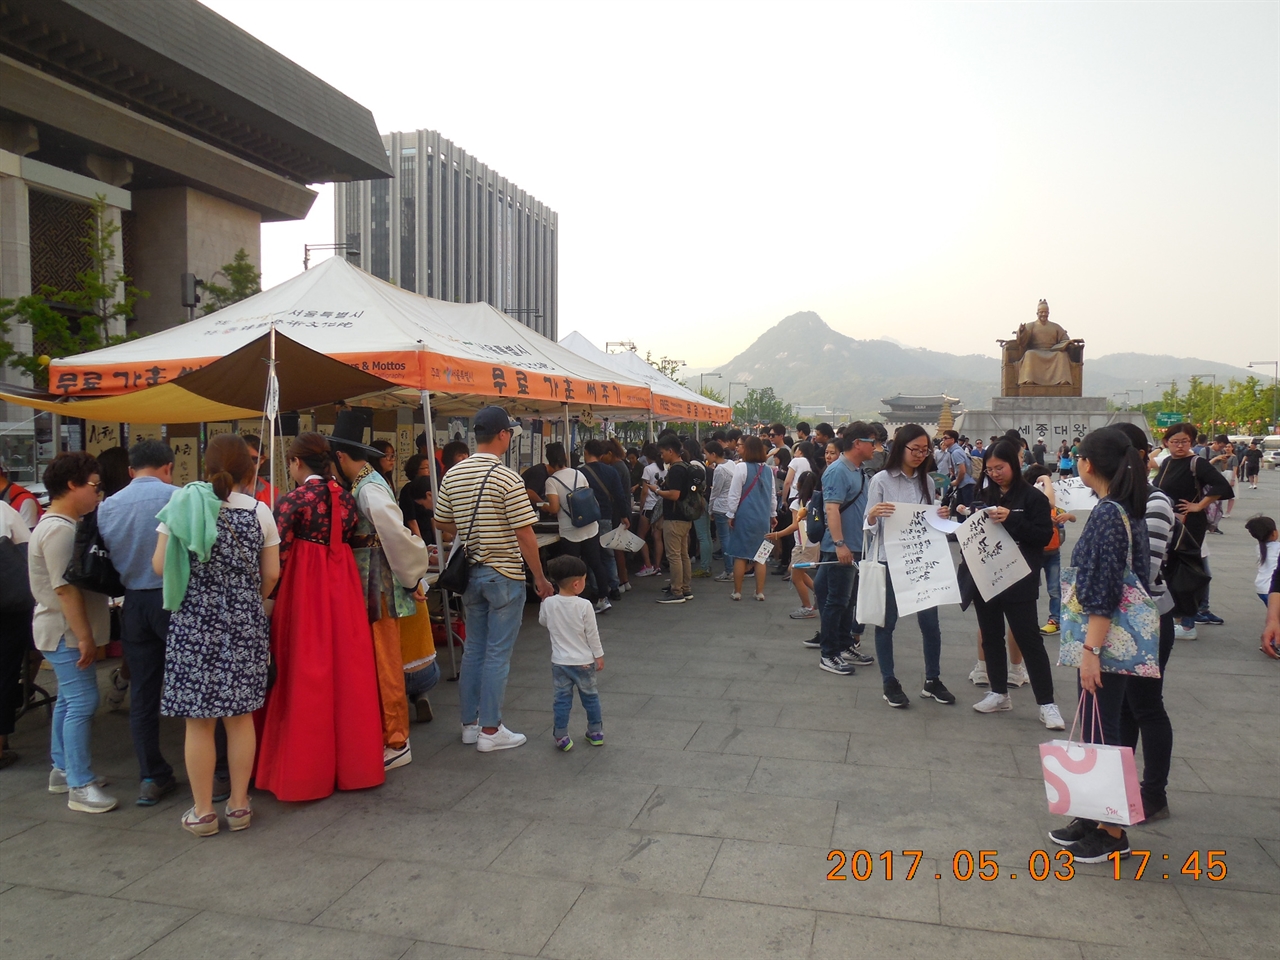 (사)한국문화예술원은 2009년부터 10년간 광화문광장에서 '무료 가훈 명구 써주기' 행사를 진행했다.